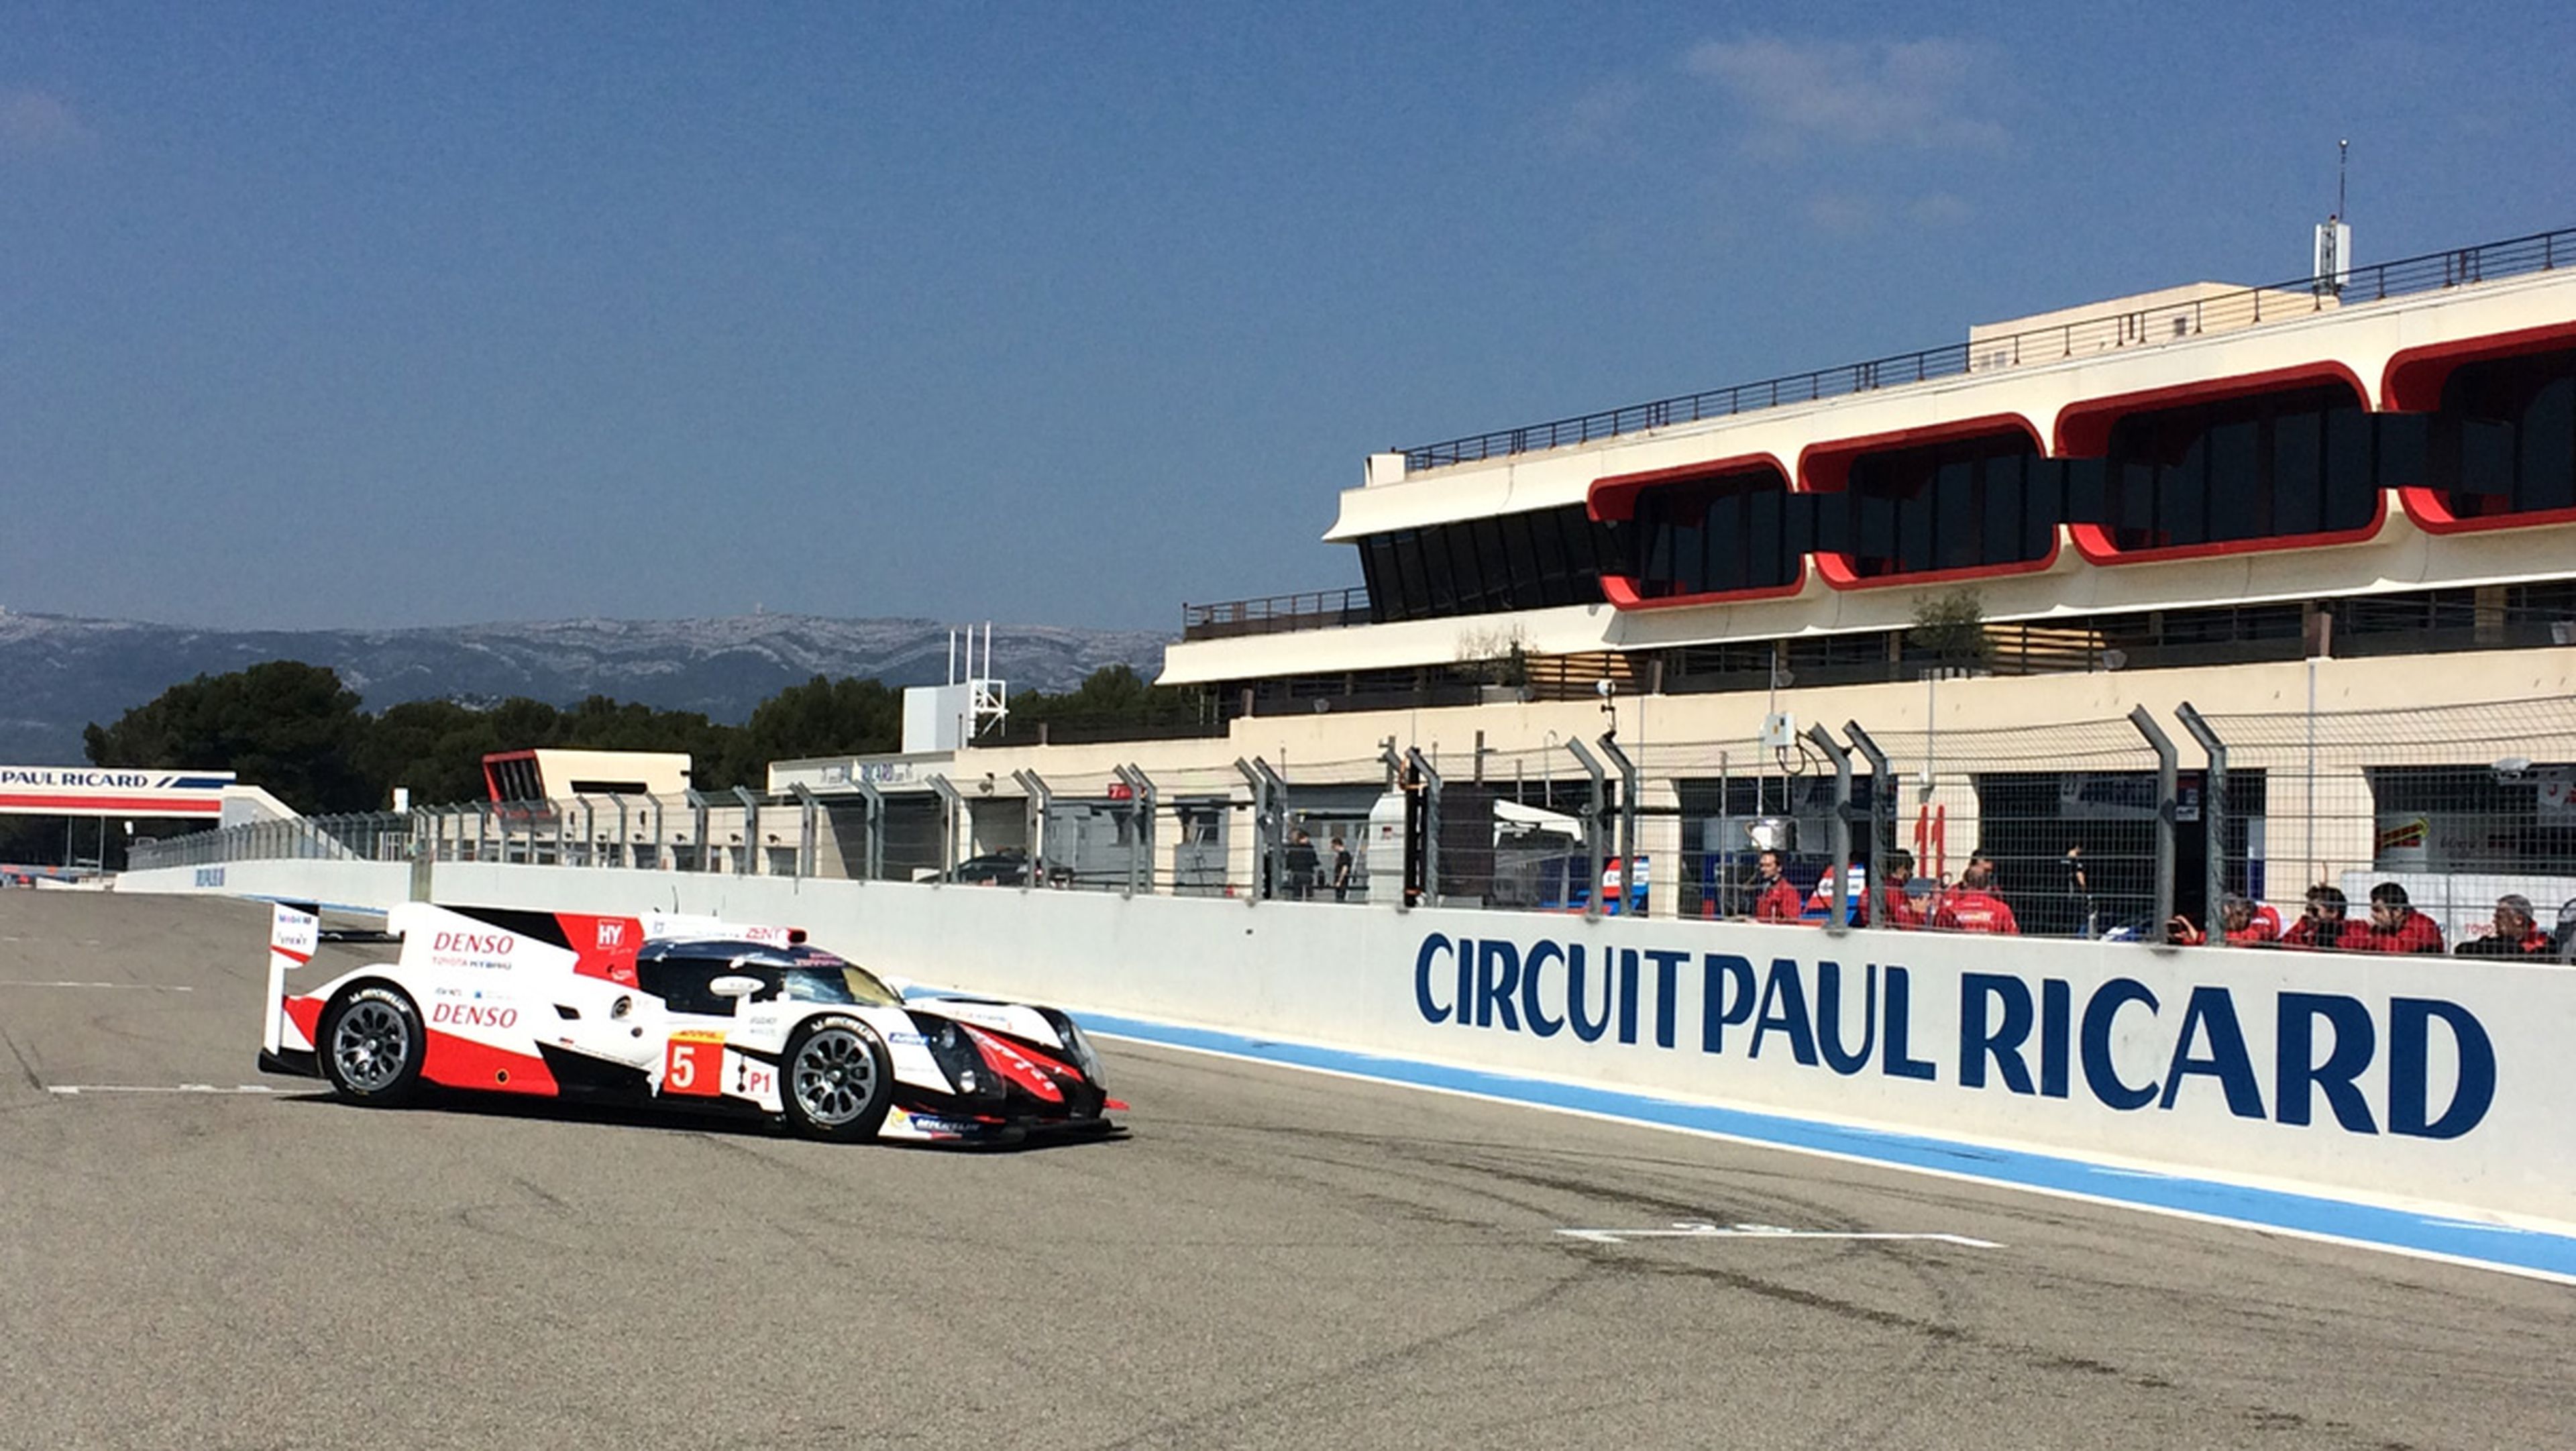 El circuito de Paul Ricard, en la Costa Azul francesa, ha acogido la jornada prólogo para los equipos del WEC.